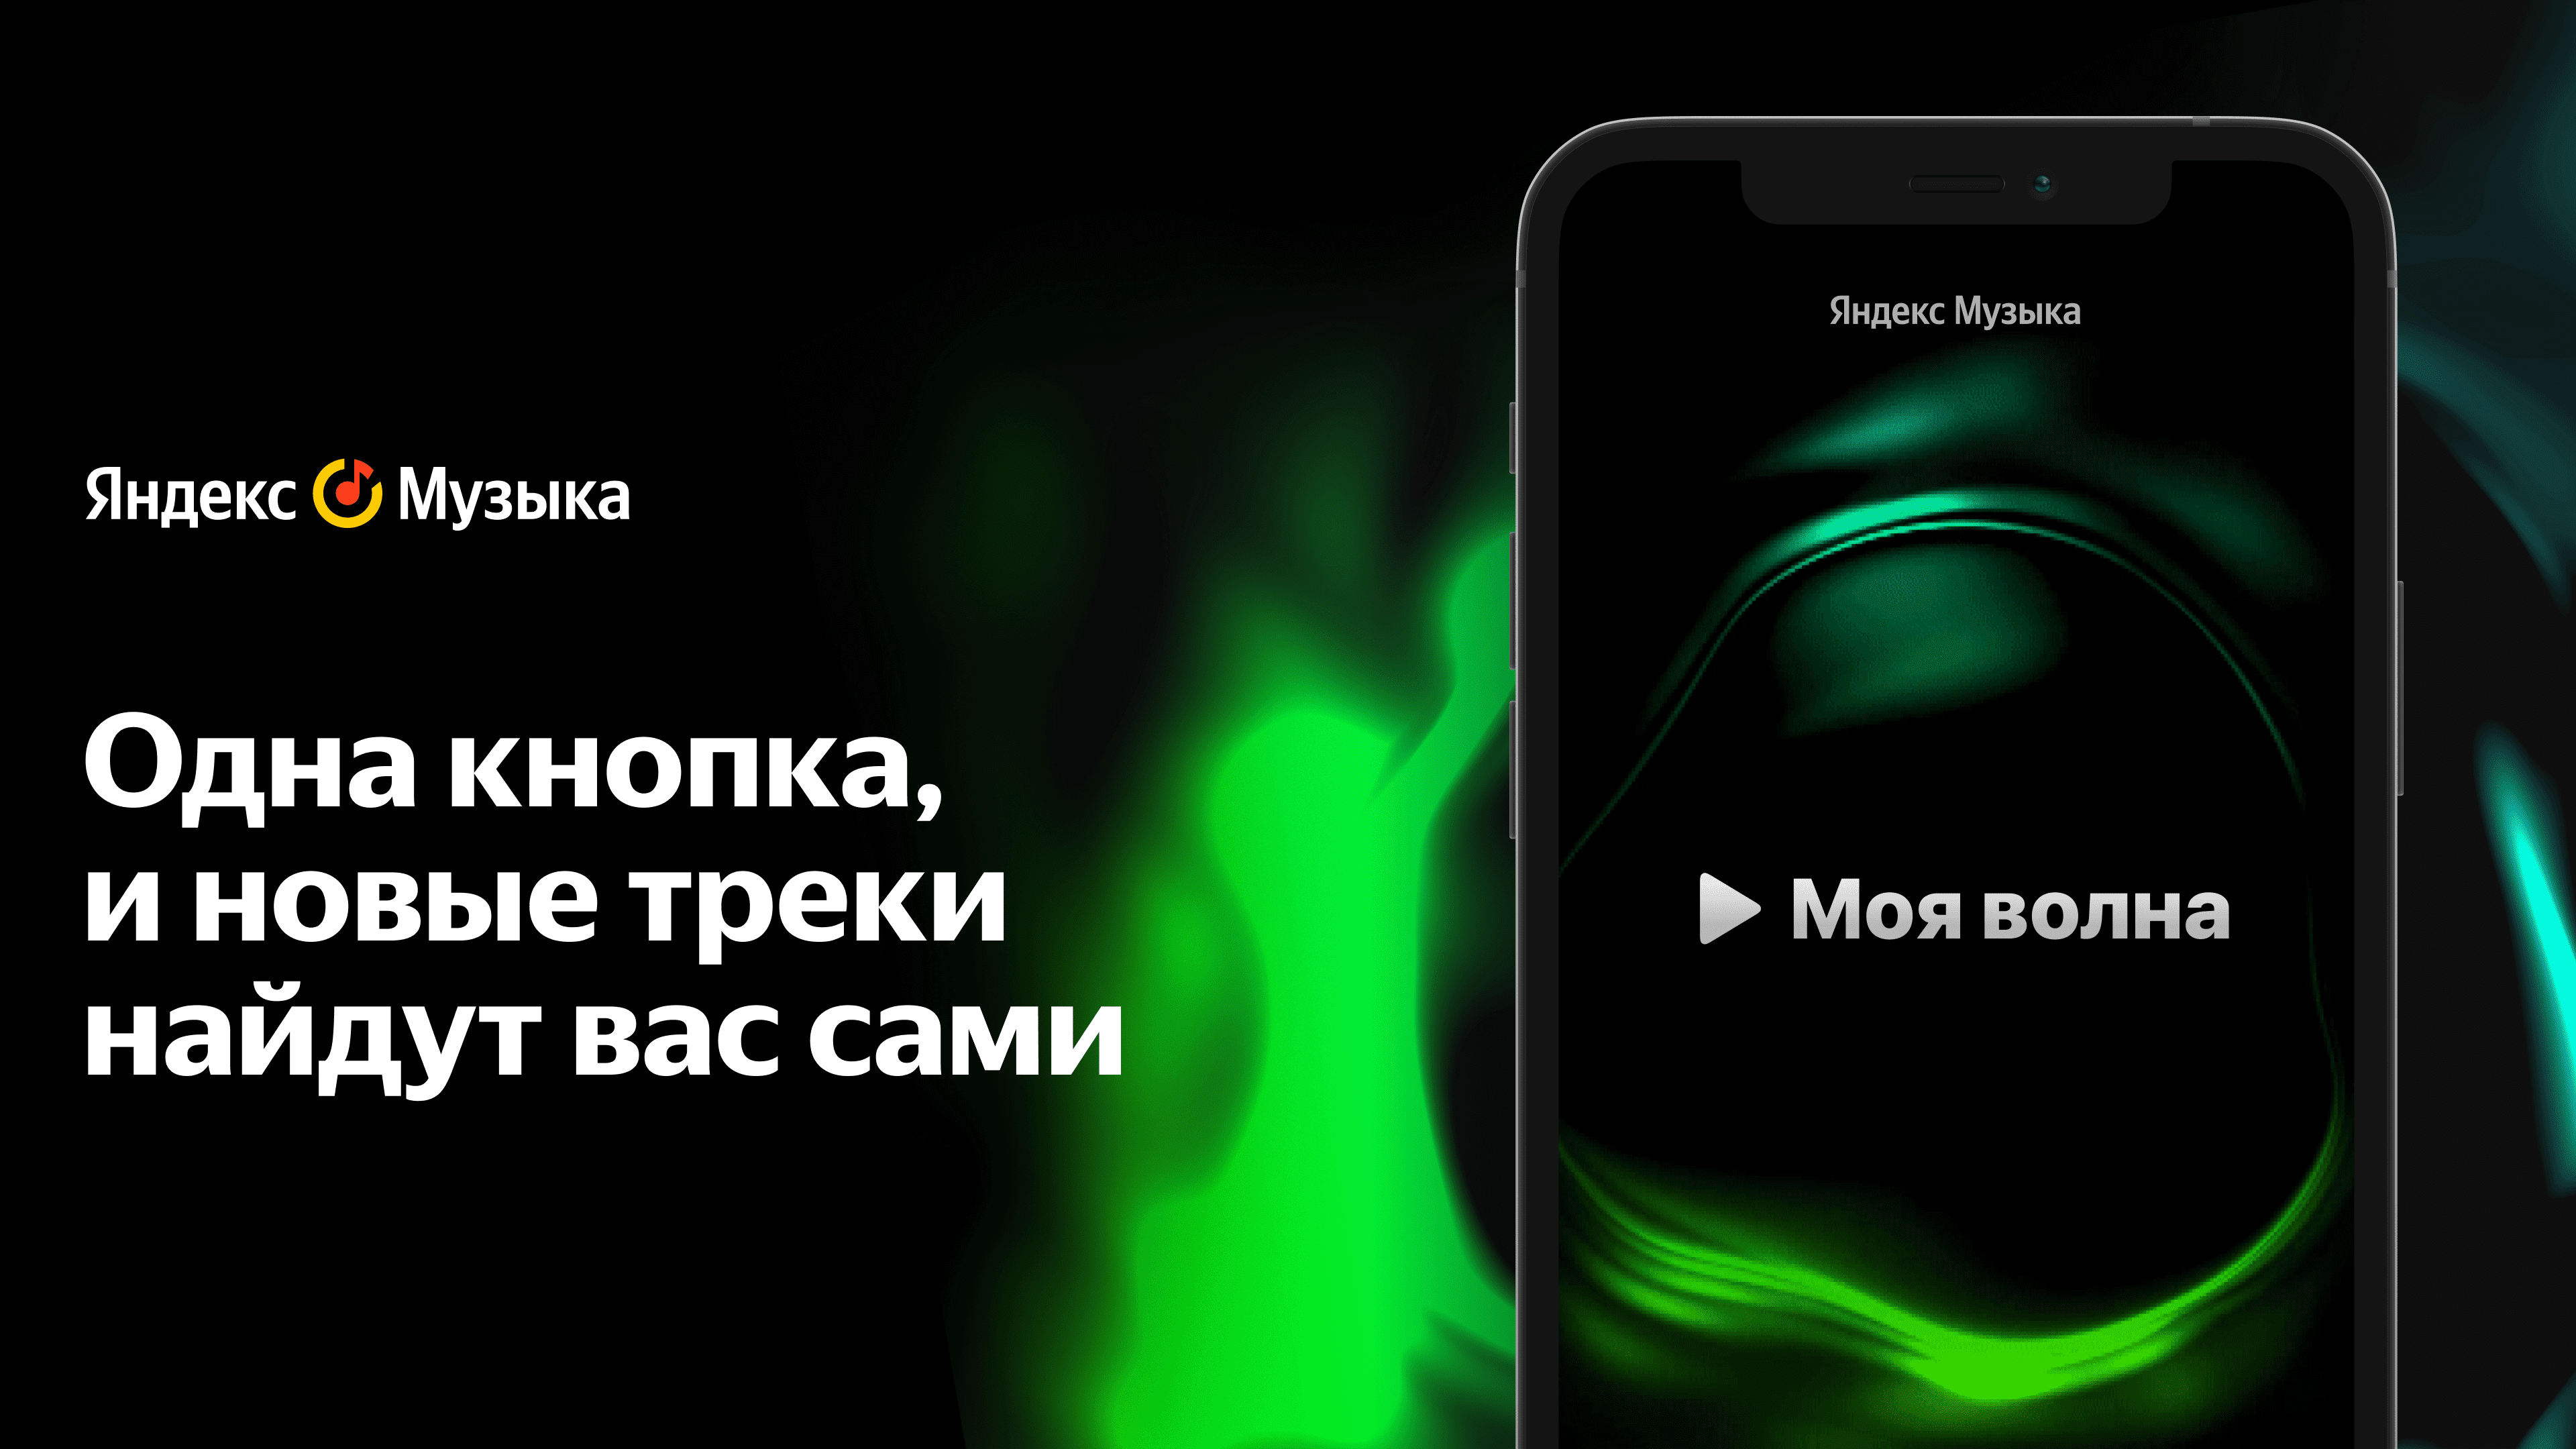 Так, к примеру, работает «Моя волна» в «Яндекс.Музыке» — бесконечный персональный поток треков